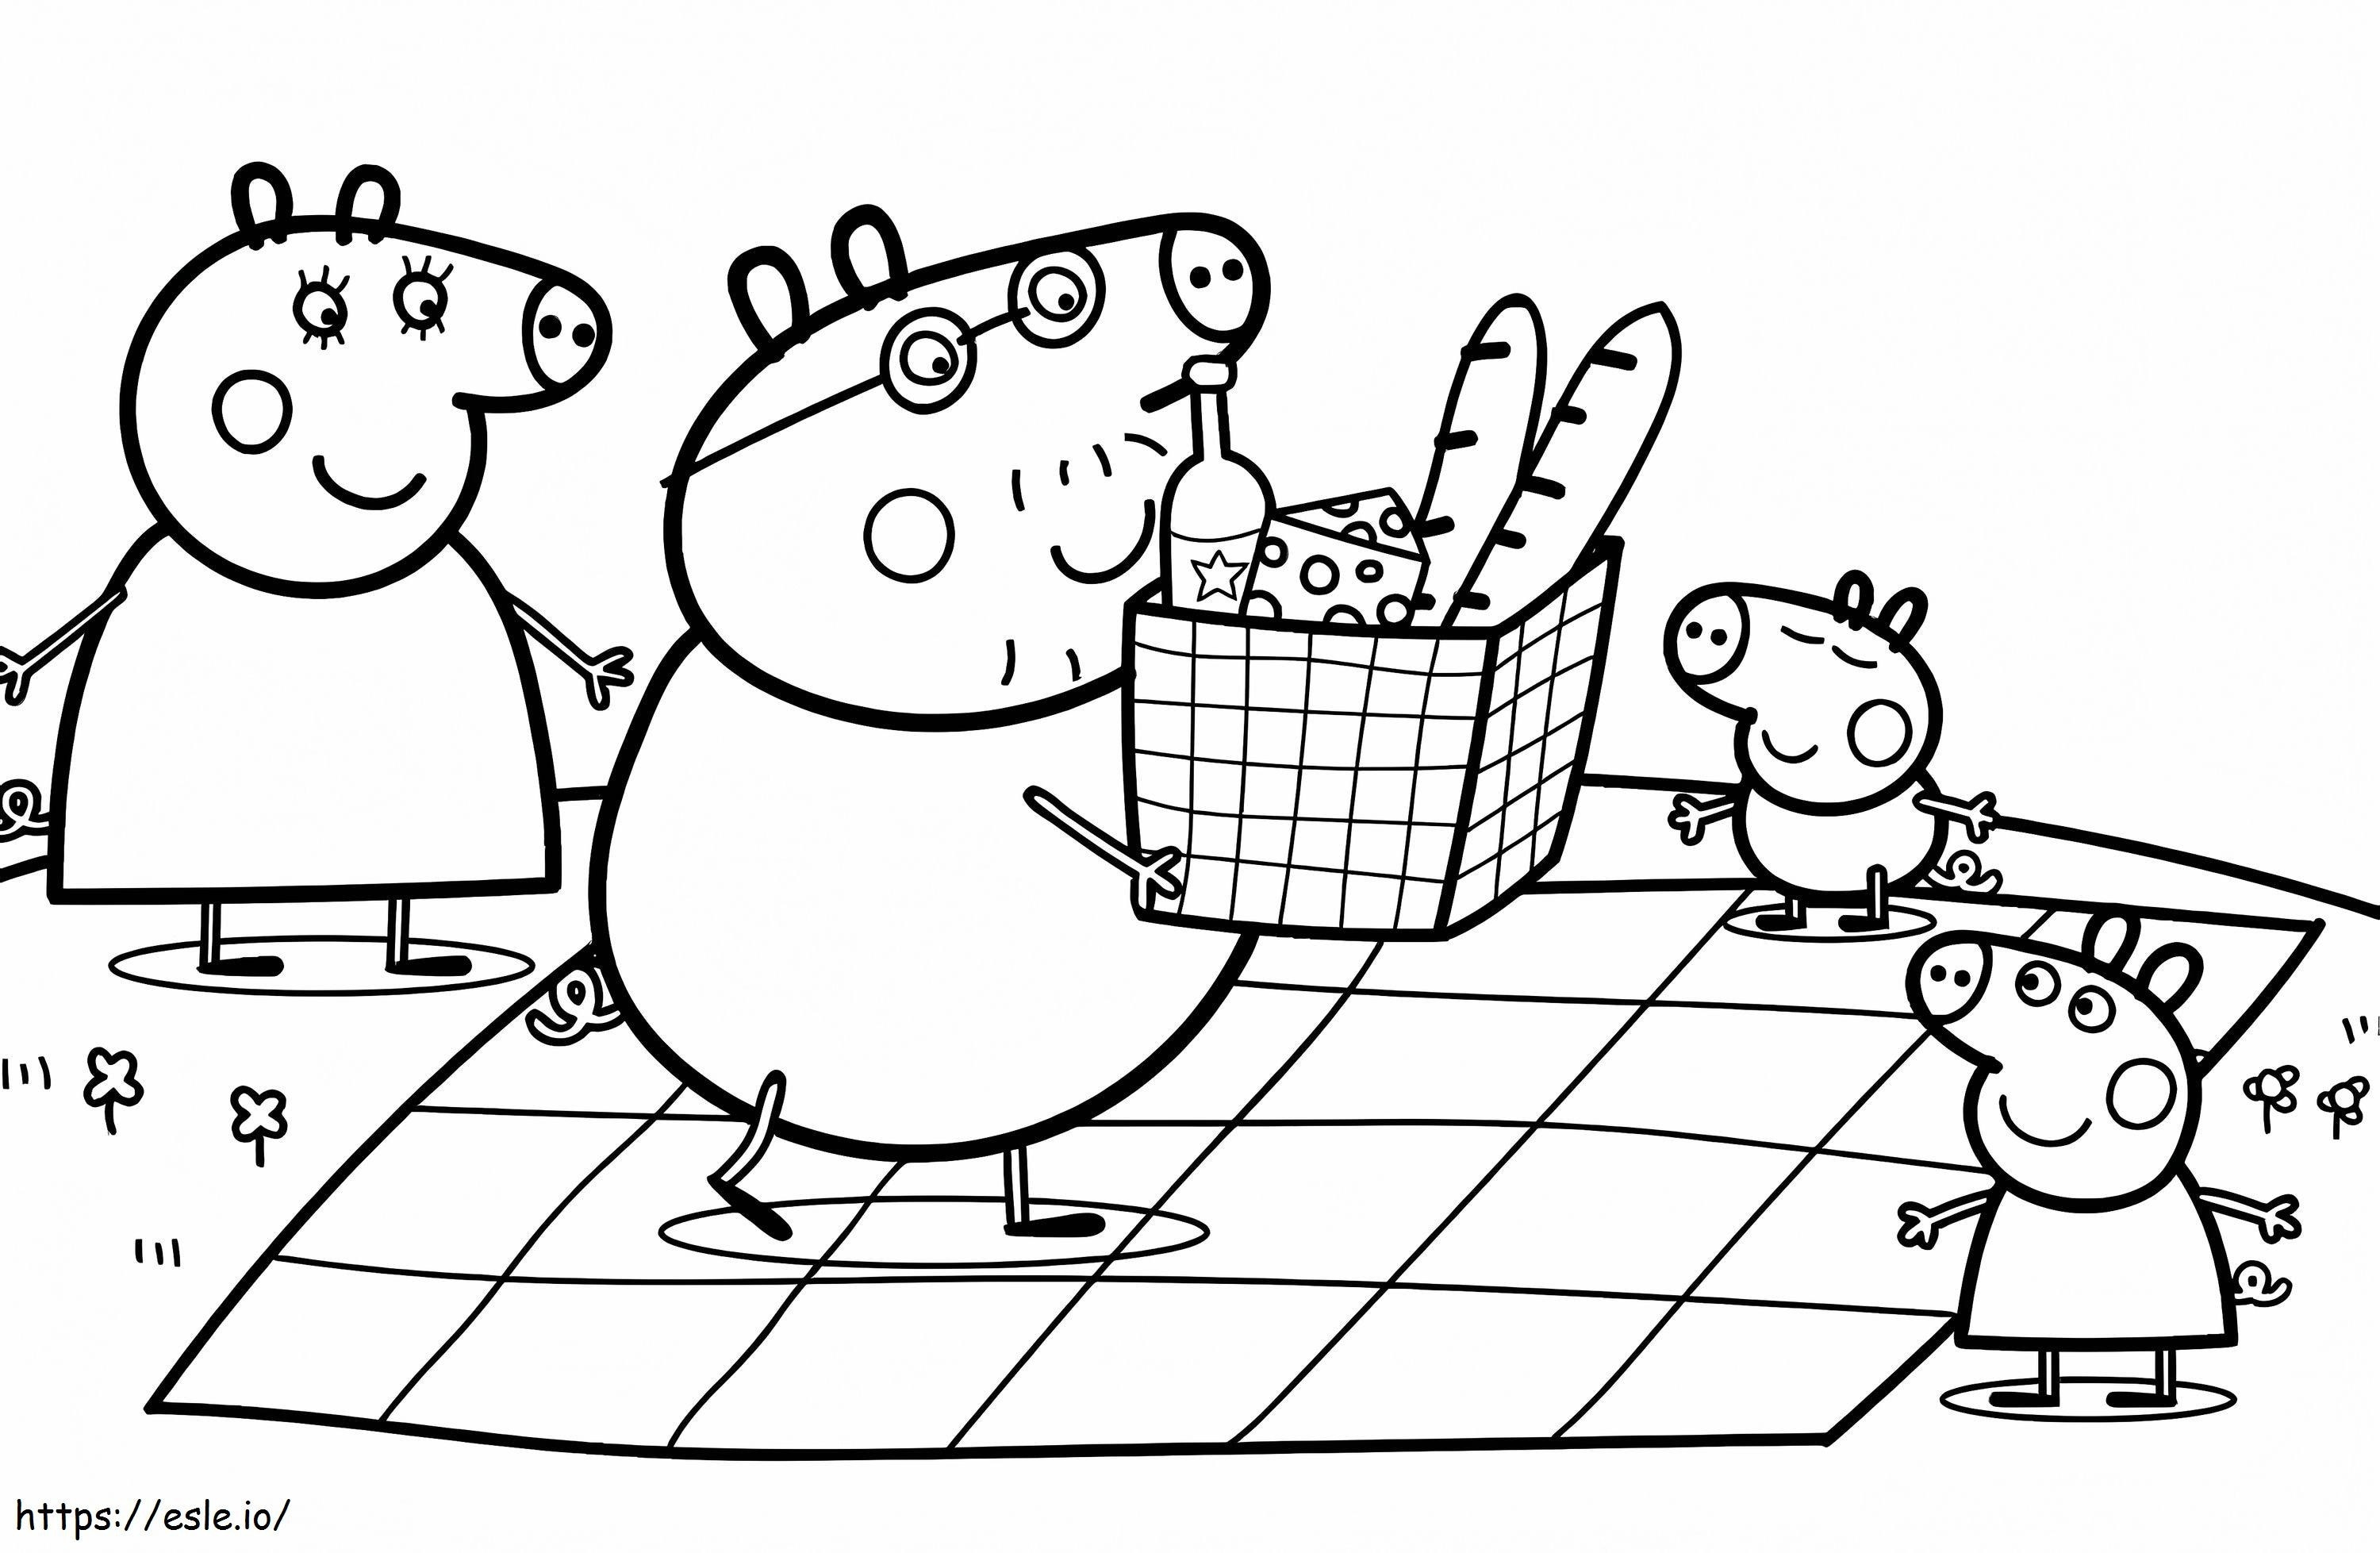 Rodzina świnki Peppy wybiera się na piknik kolorowanka